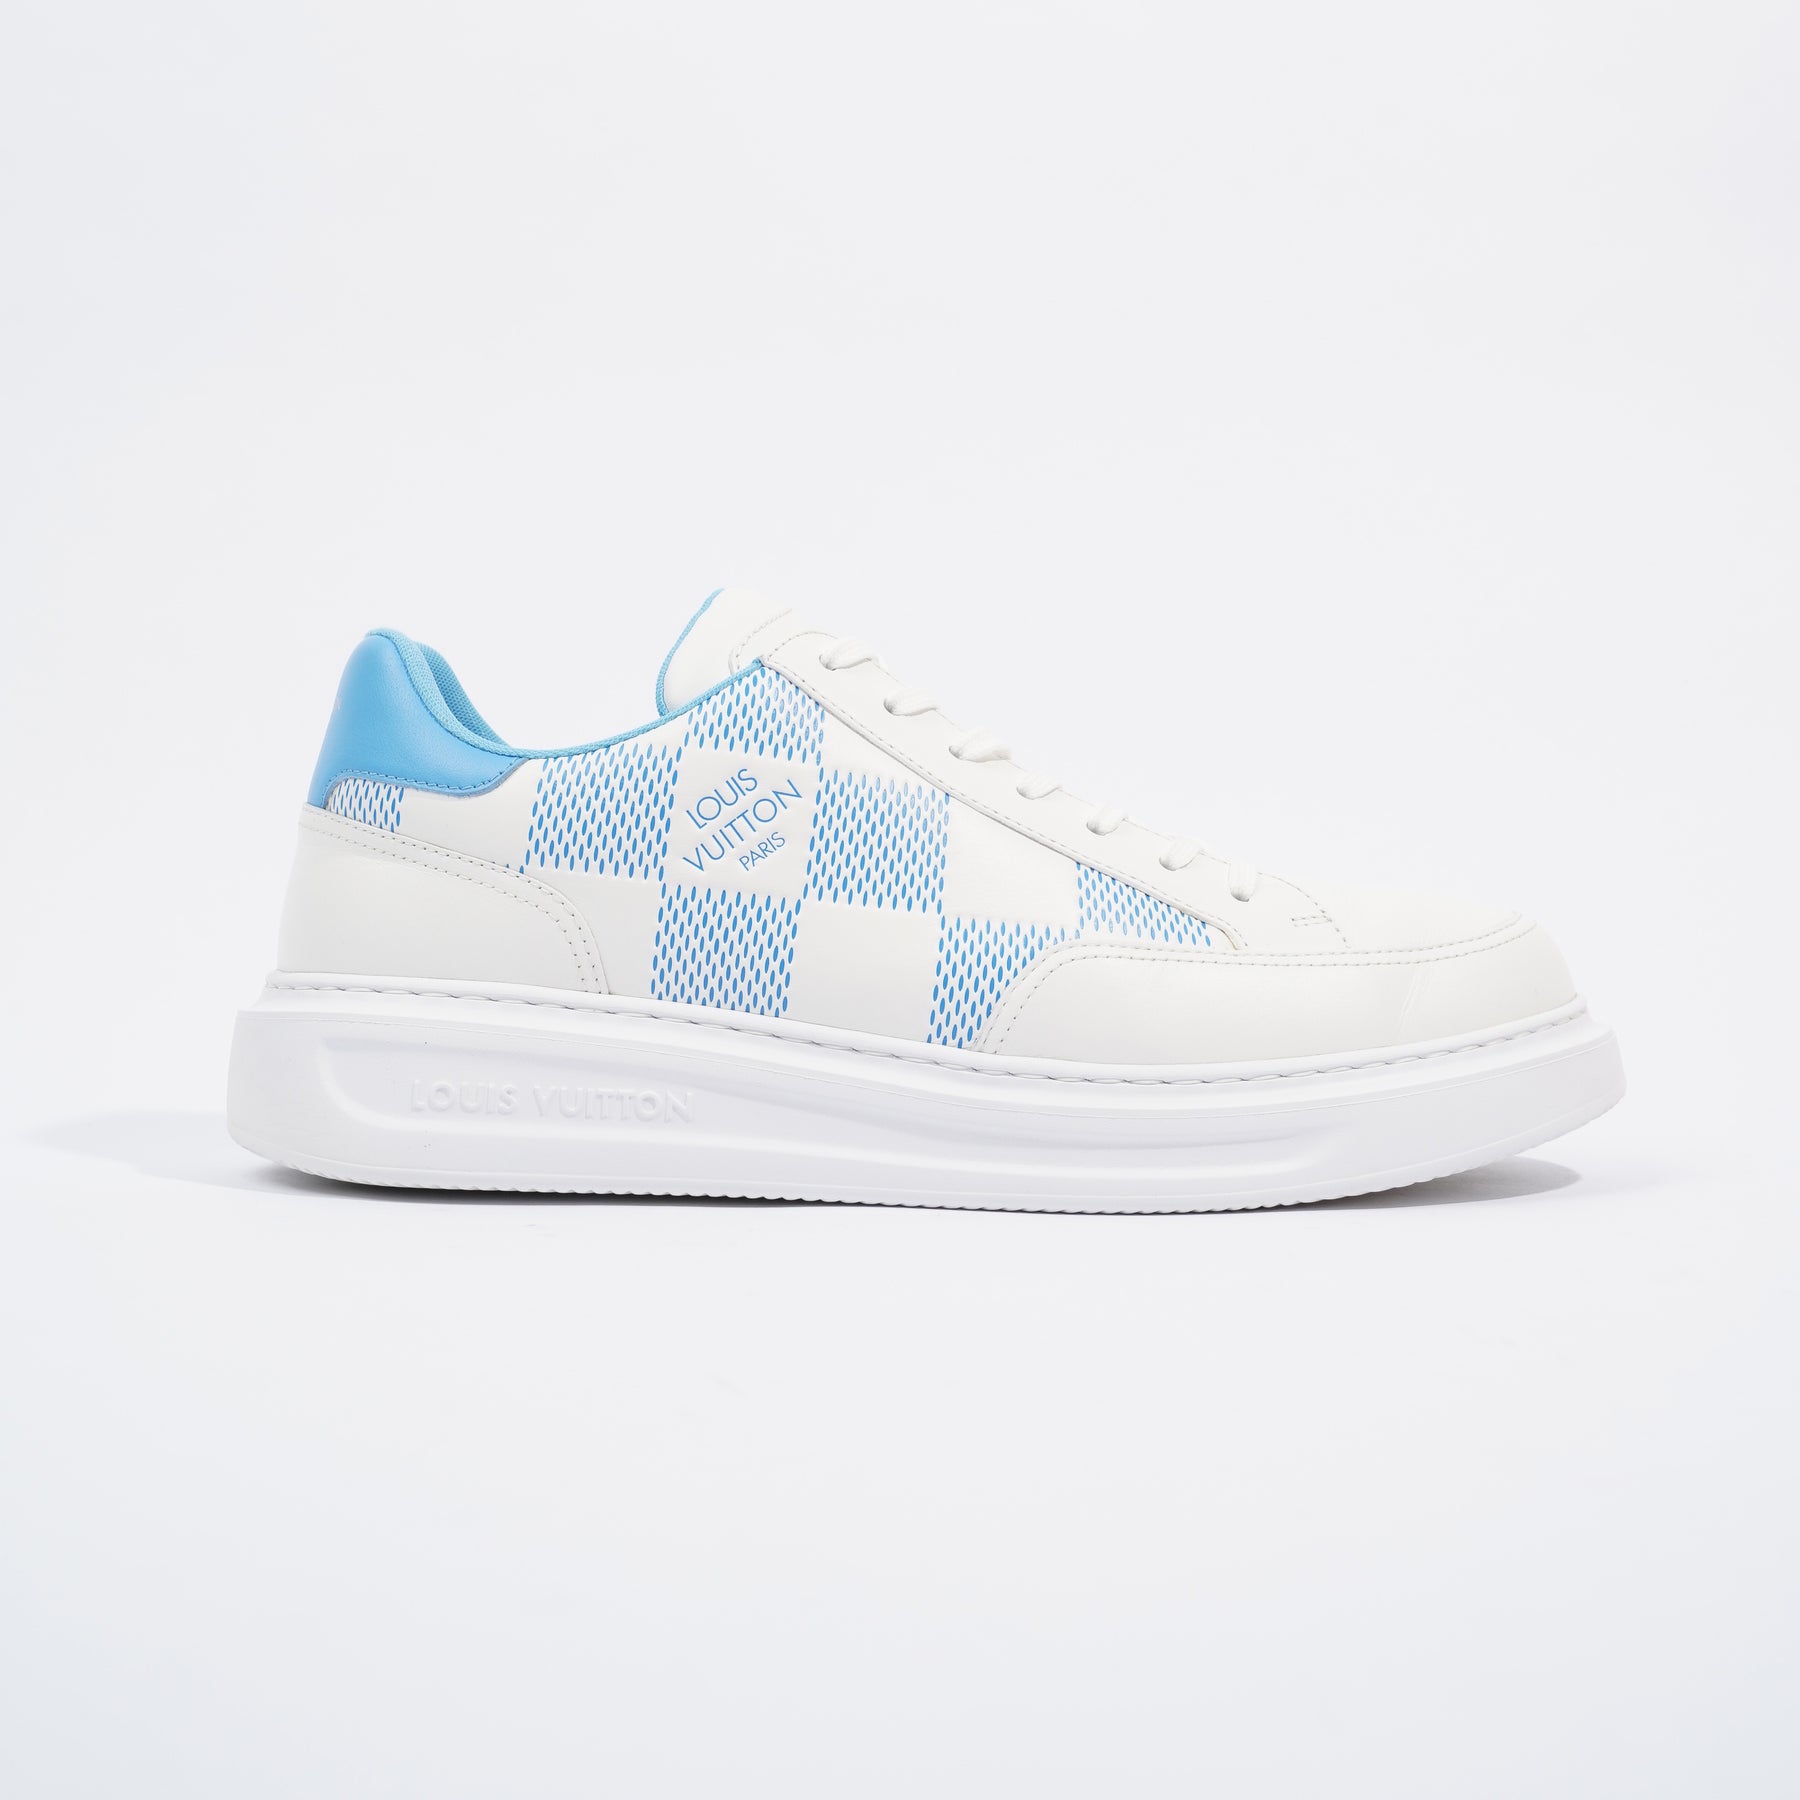 Louis Vuitton Beverley Hills Sneaker White / Blue EU 43 / UK 9